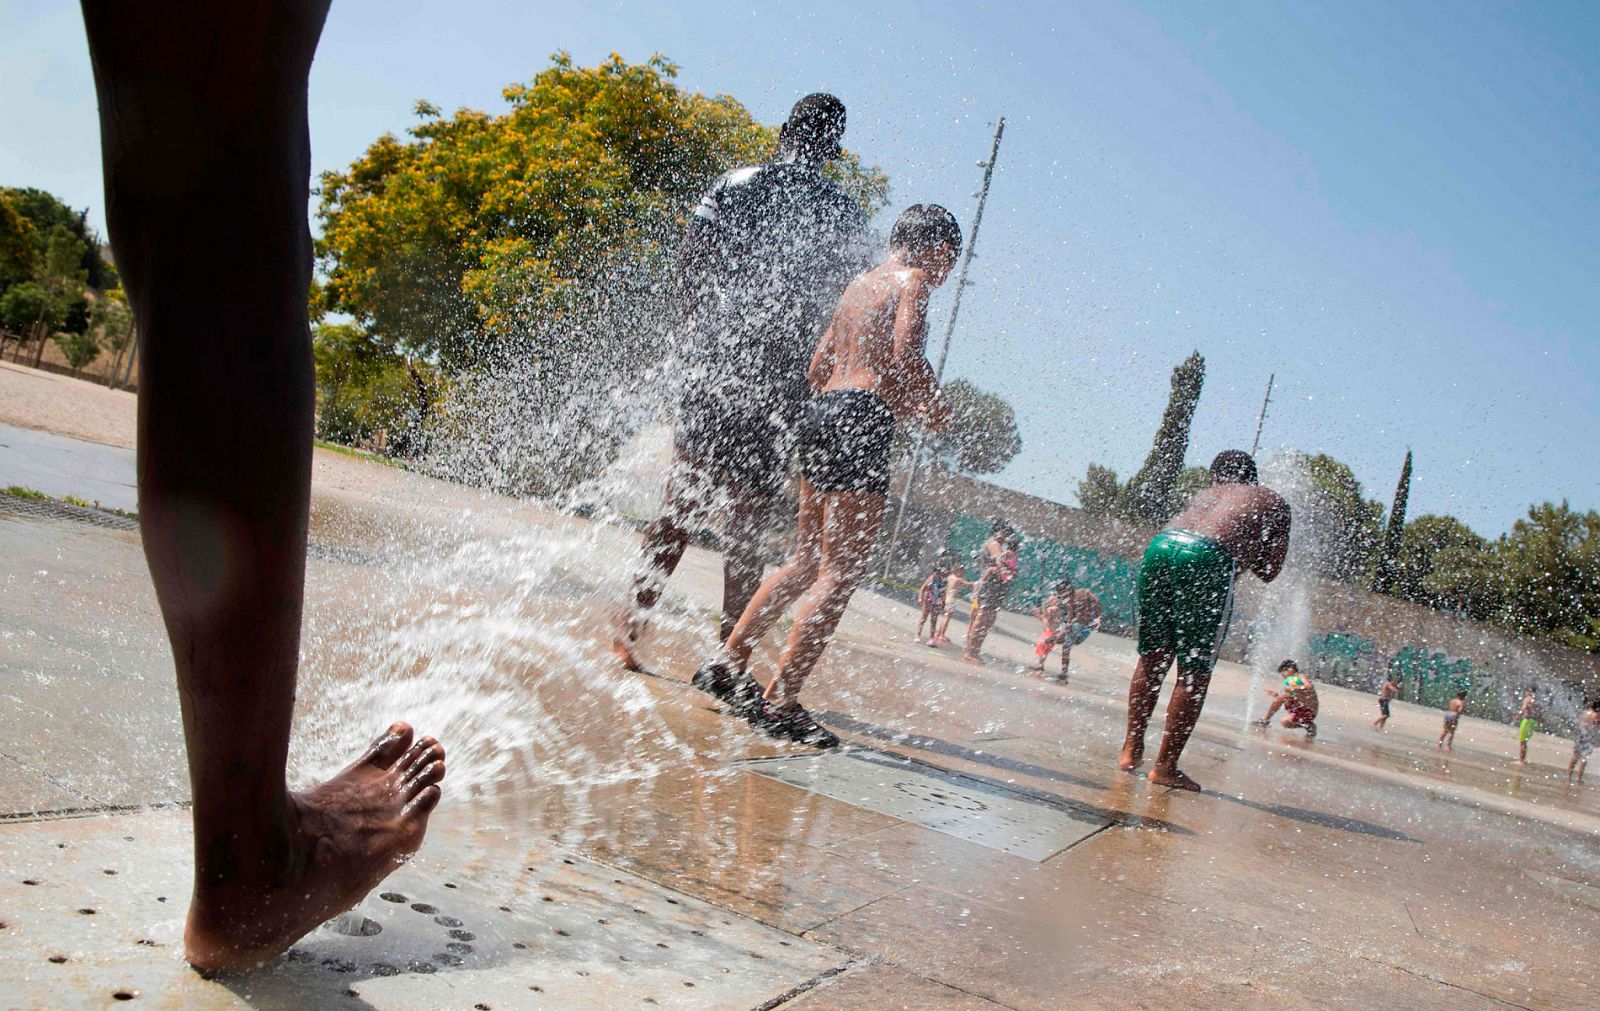 La ola de calor deja récords de temperaturas más altas durante la noche en varias ciudades españolas - RTVE.es